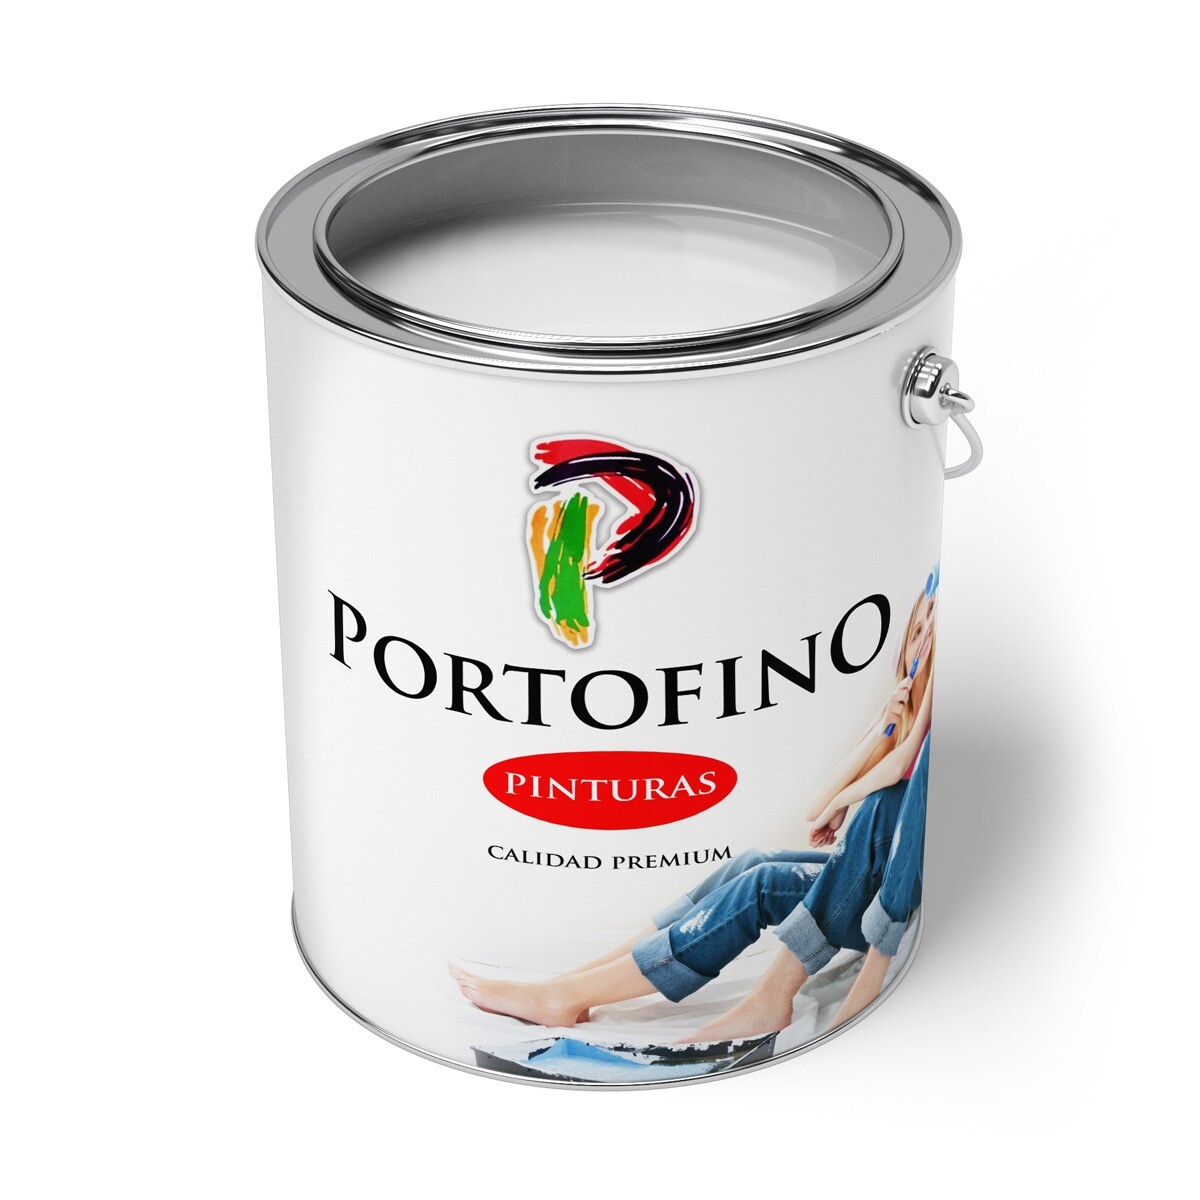 Convertilux Portofino 4 Lt. Pardo 